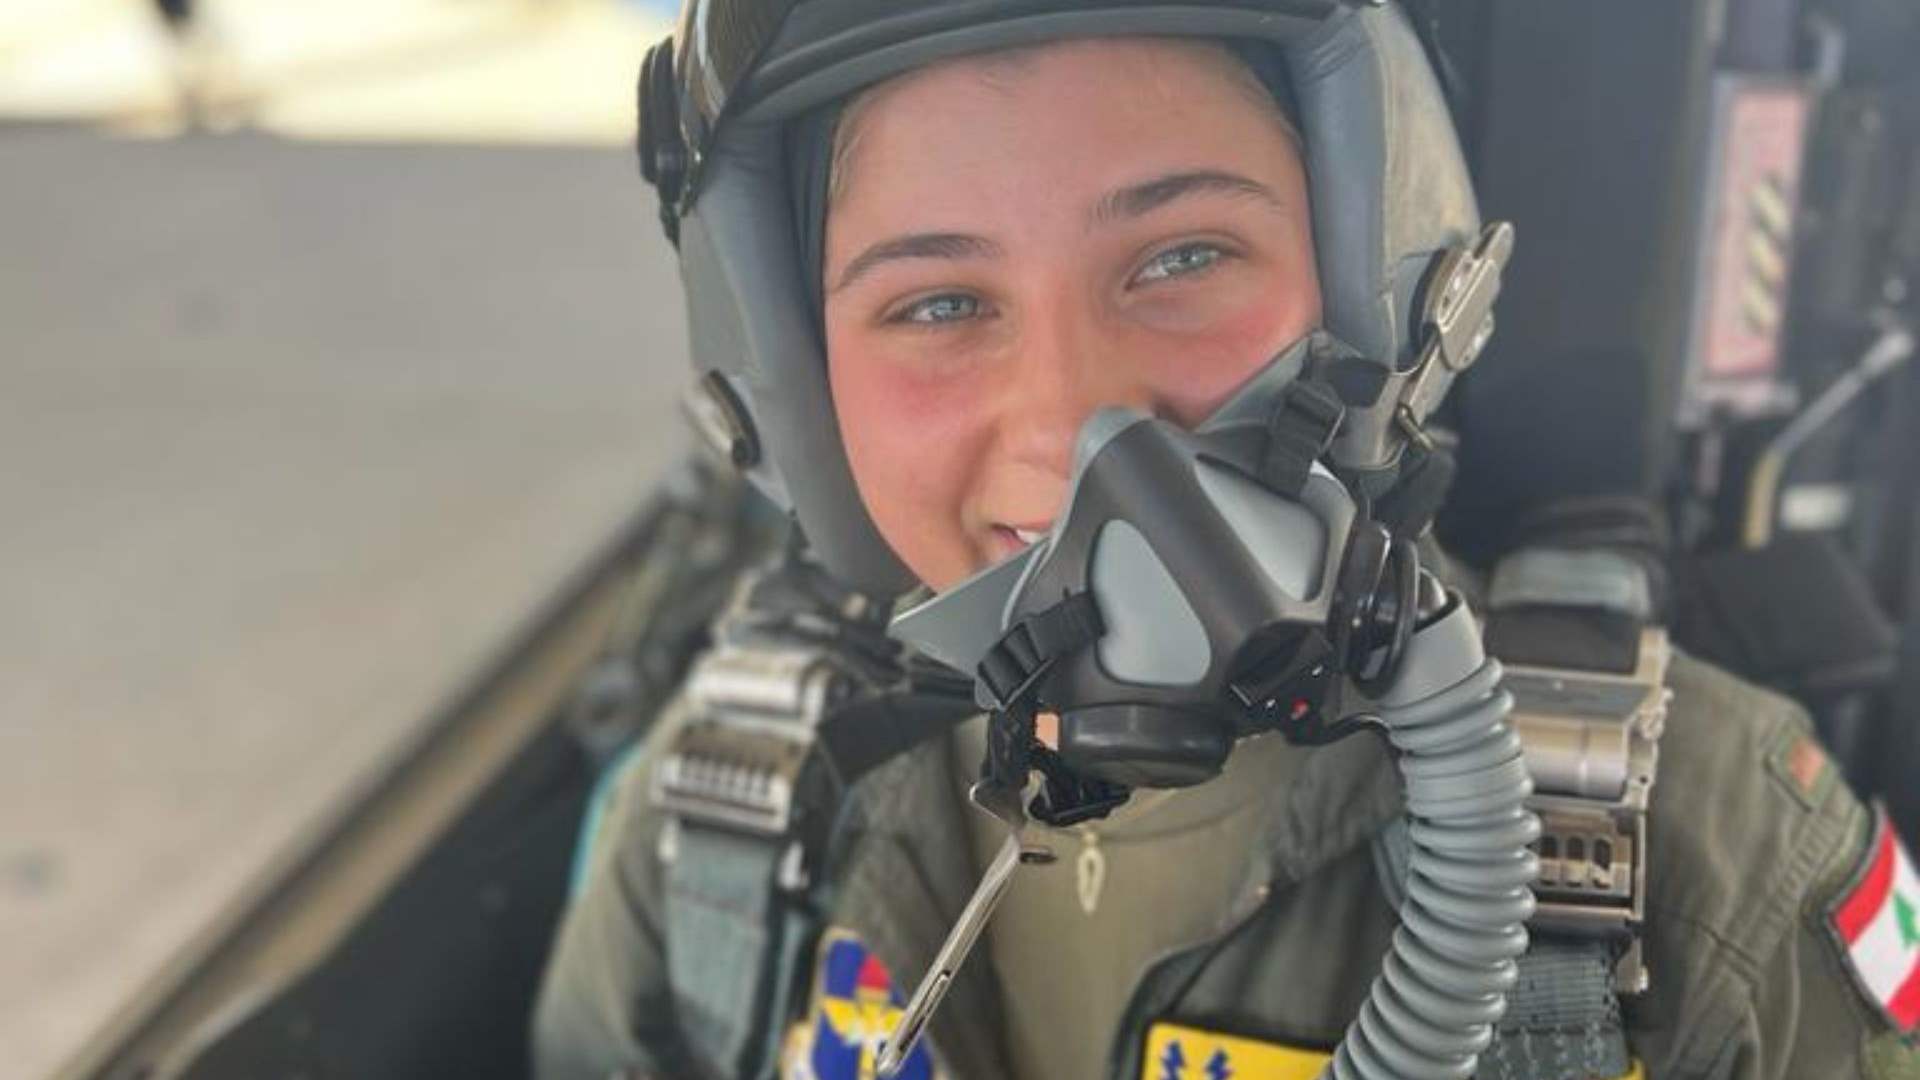 LAF hails first female fighter jet pilot